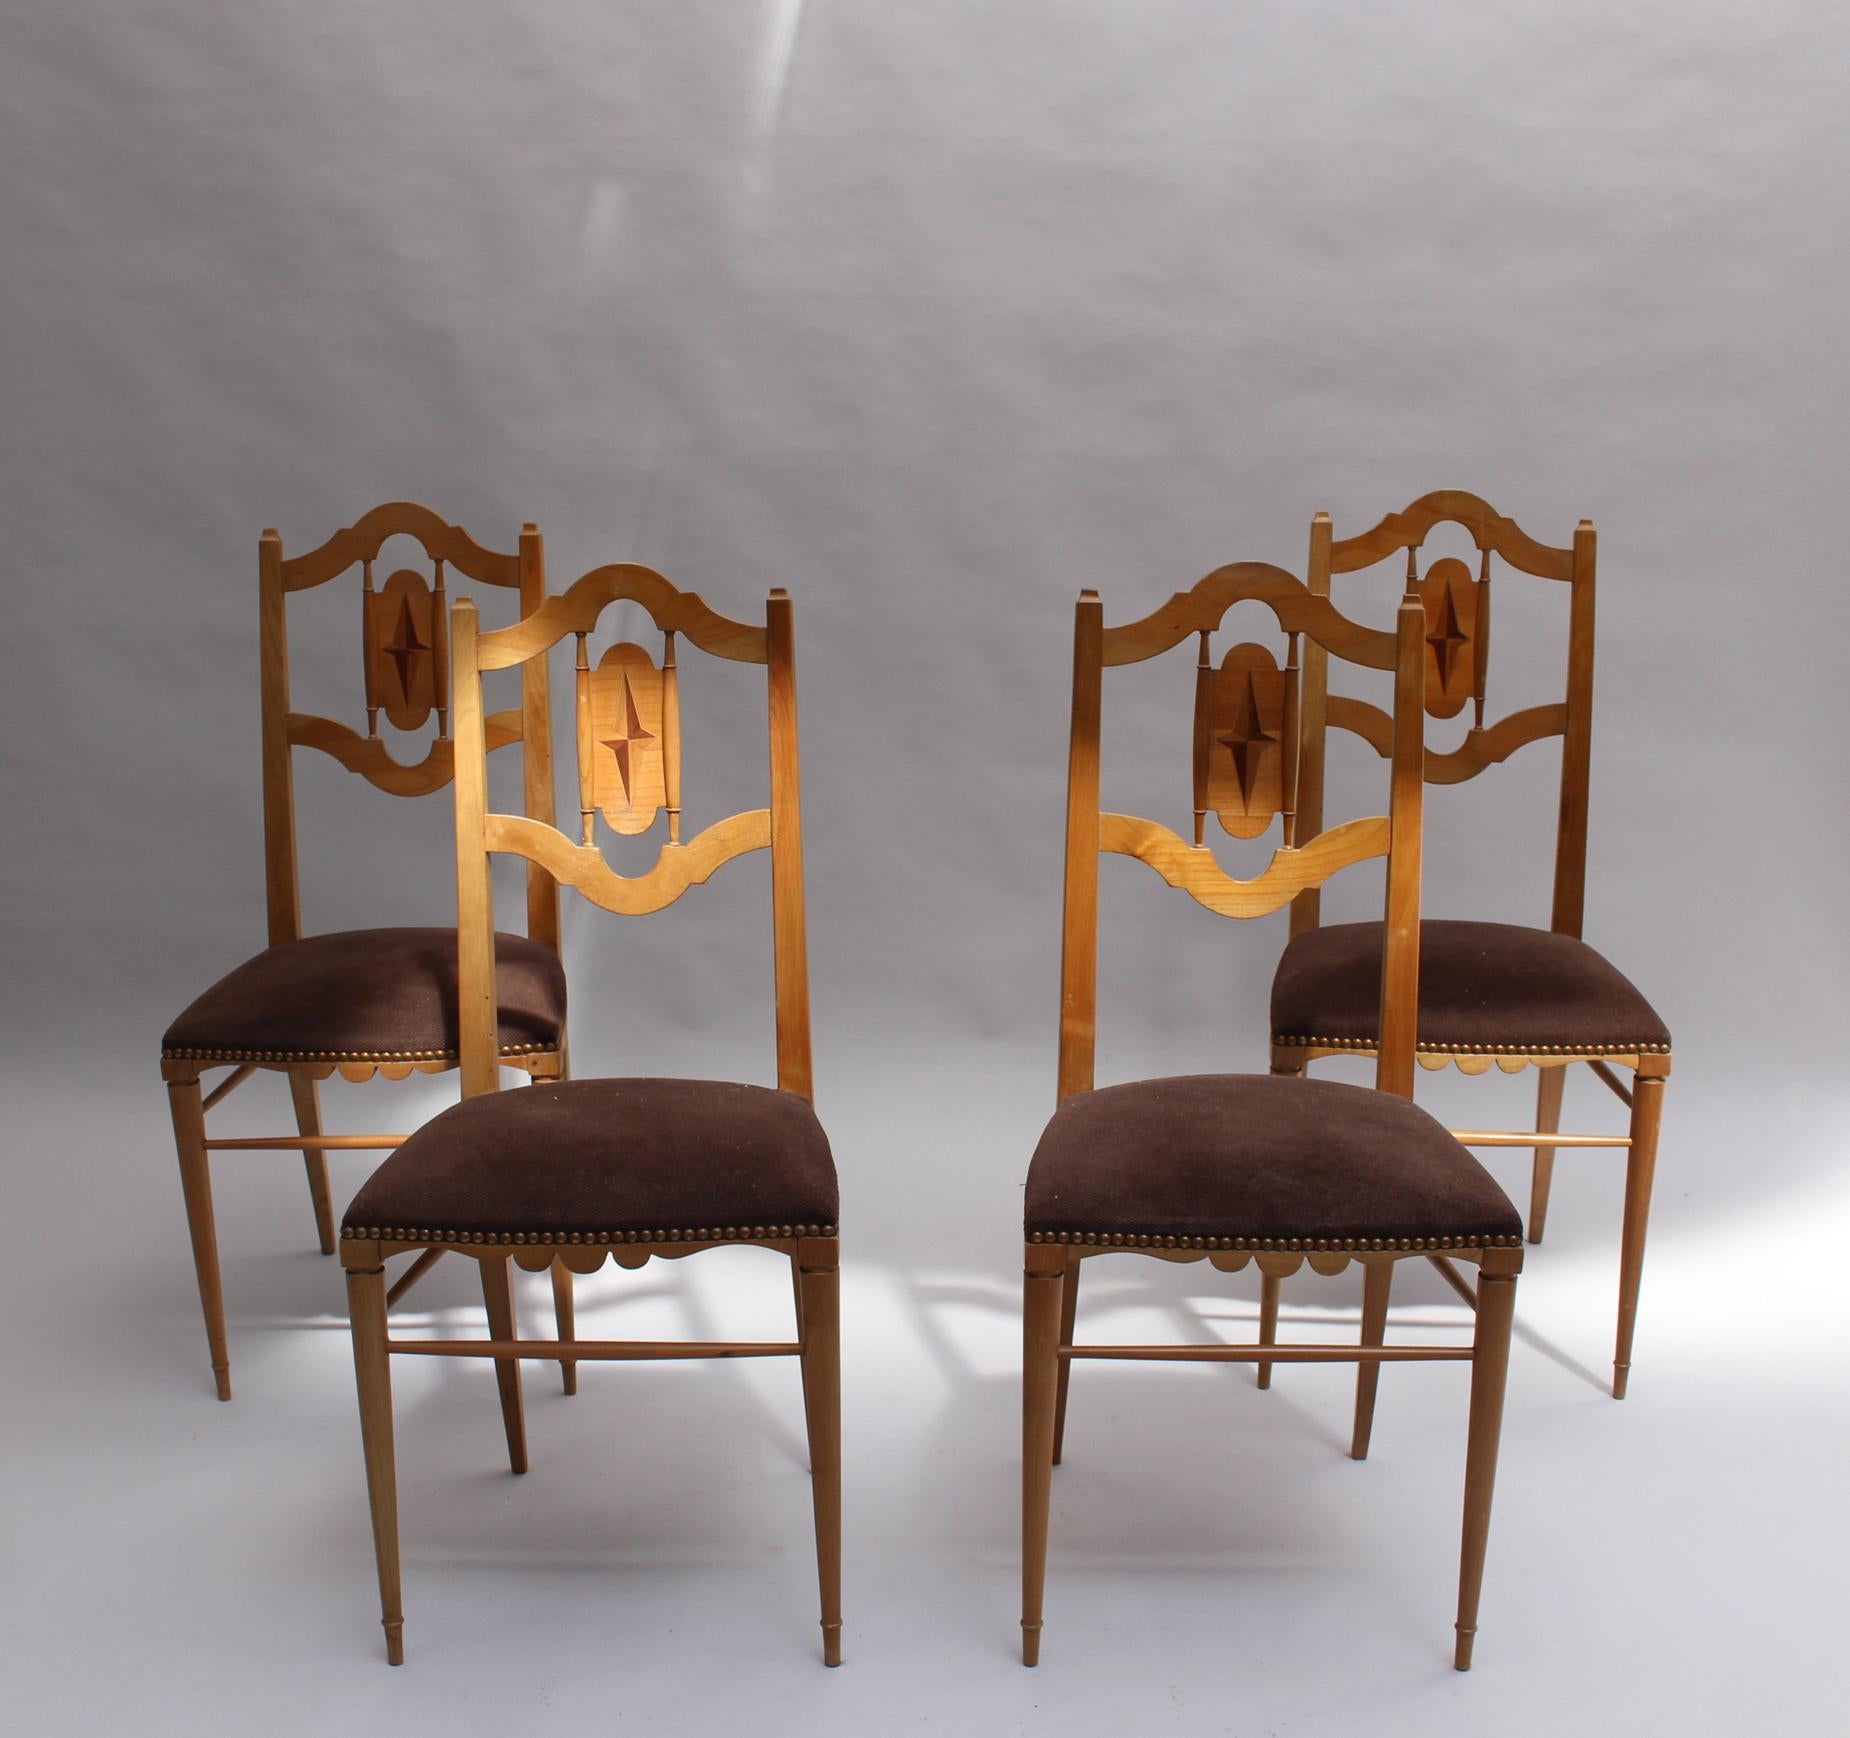 Ein Satz von vier französischen Kirschholzstühlen aus den 20er und 30er Jahren mit durchbrochenen Rückenlehnen und geometrischen Intarsien mit geschnitztem Sockel und konischen Beinen.
Gestempelt auf zwei Stühlen.